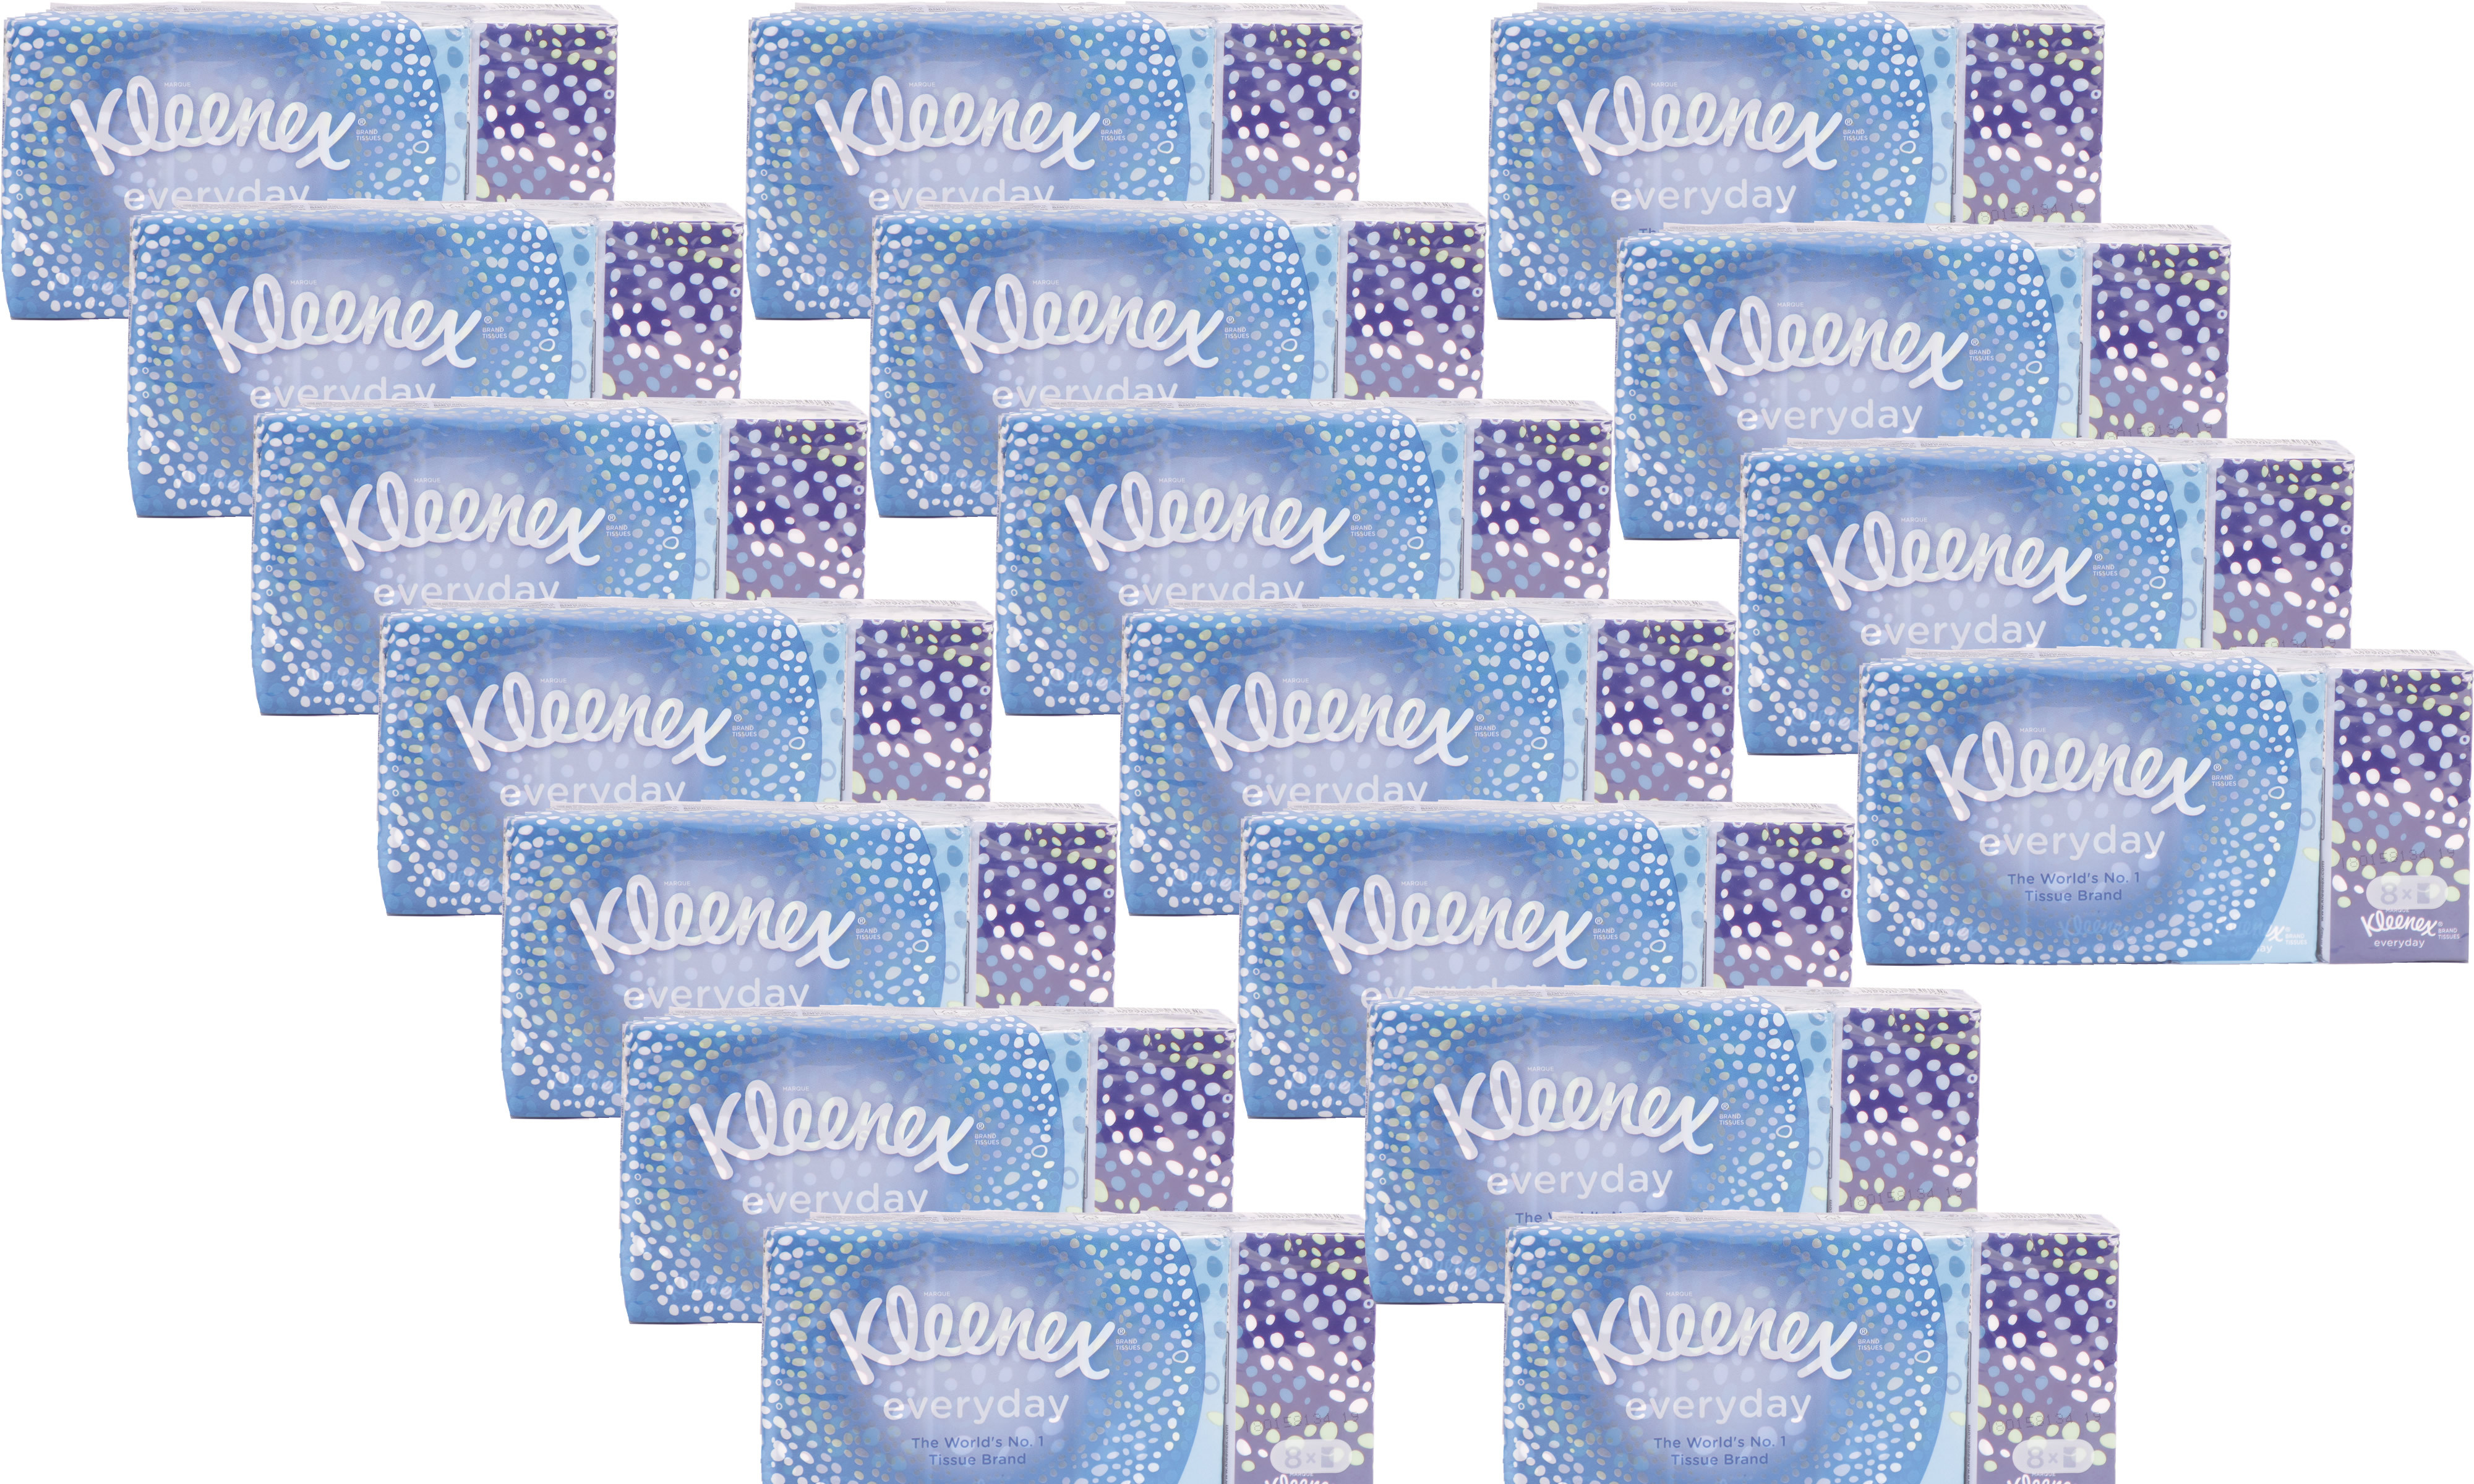 Kleenex Taschentücher Every Day